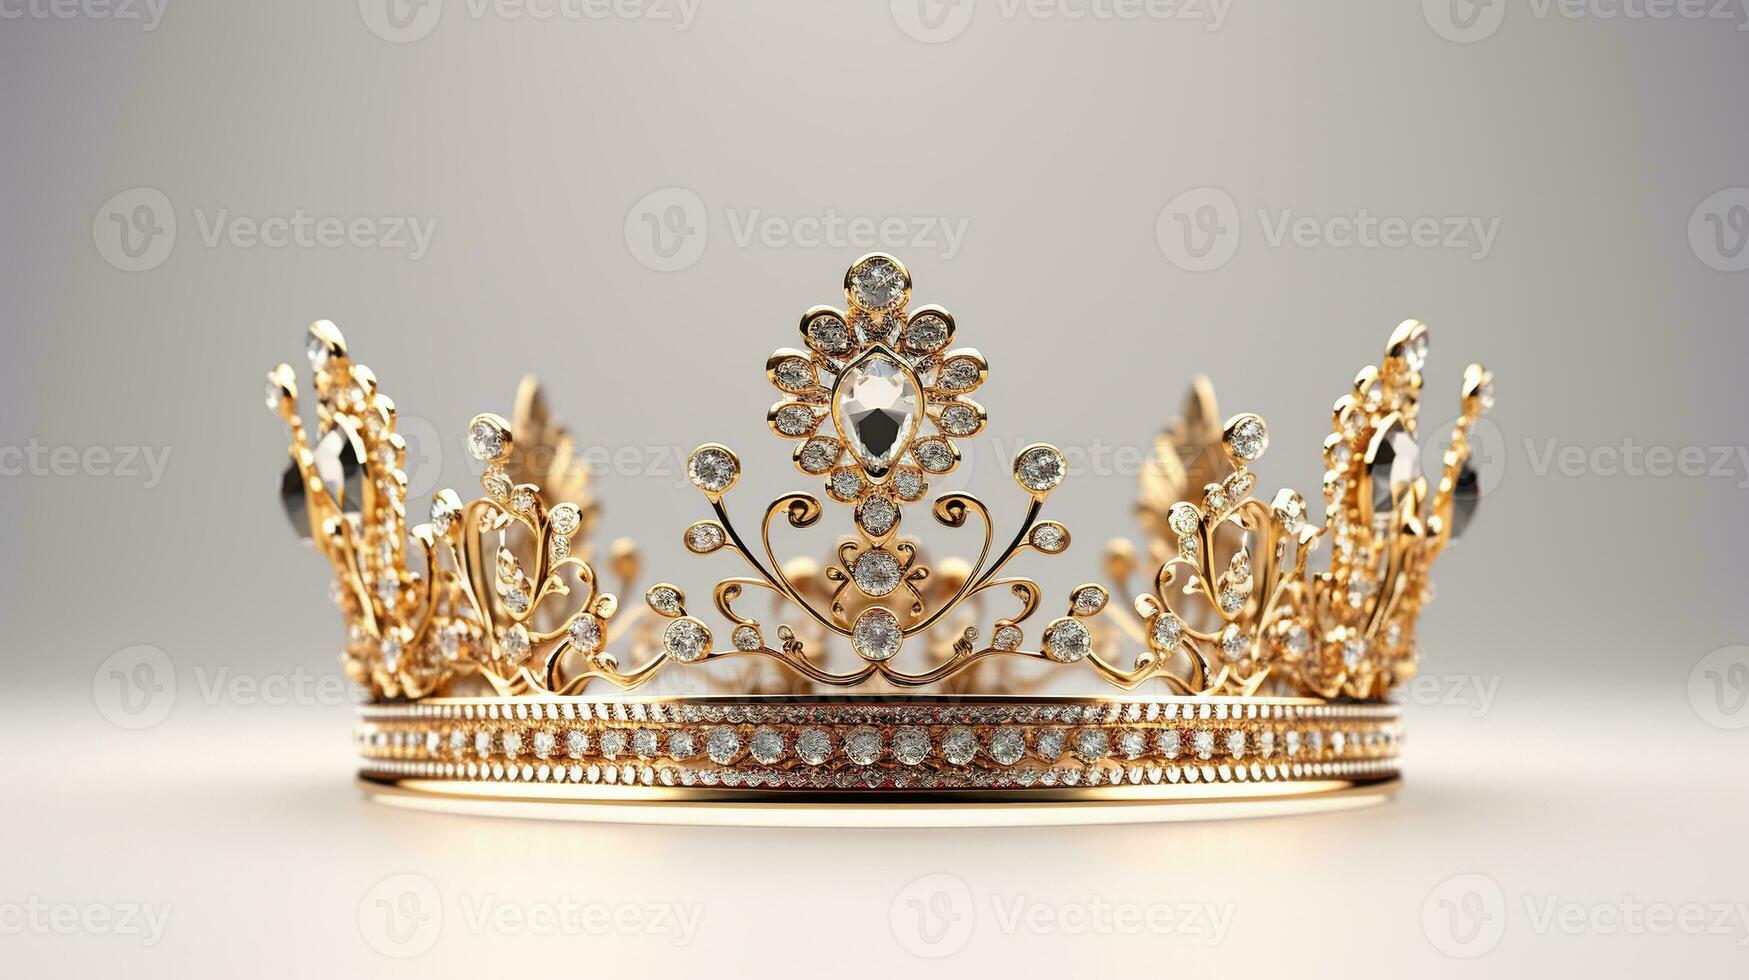 détaillé reine couronne fabriqué de or isolé sur le plaine arrière-plan, décoré avec précieux bijoux photo